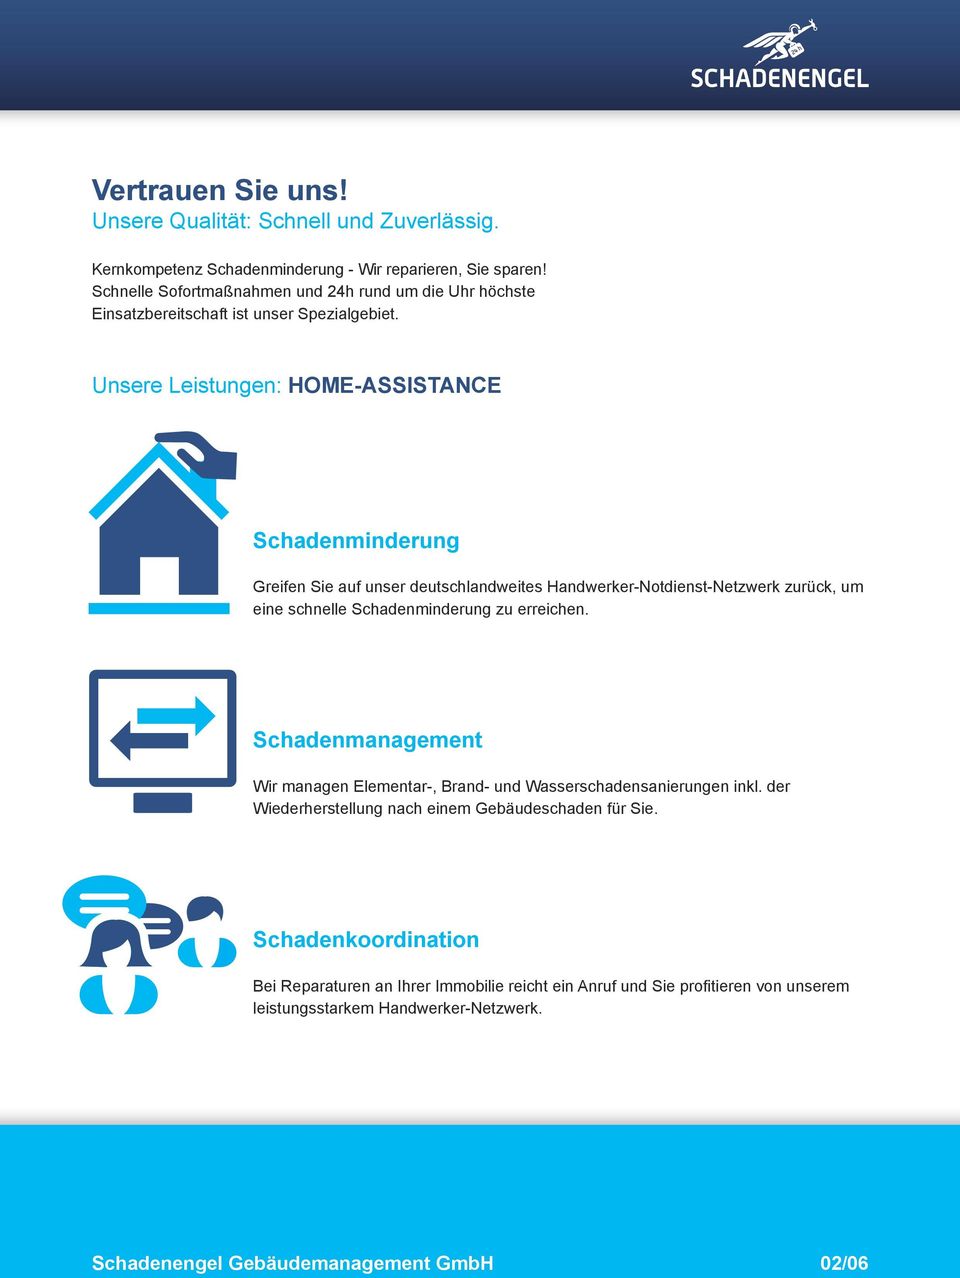 Unsere Leistungen: HOME-ASSISTANCE Schadenminderung Greifen Sie auf unser deutschlandweites Handwerker-Notdienst-Netzwerk zurück, um eine schnelle Schadenminderung zu erreichen.